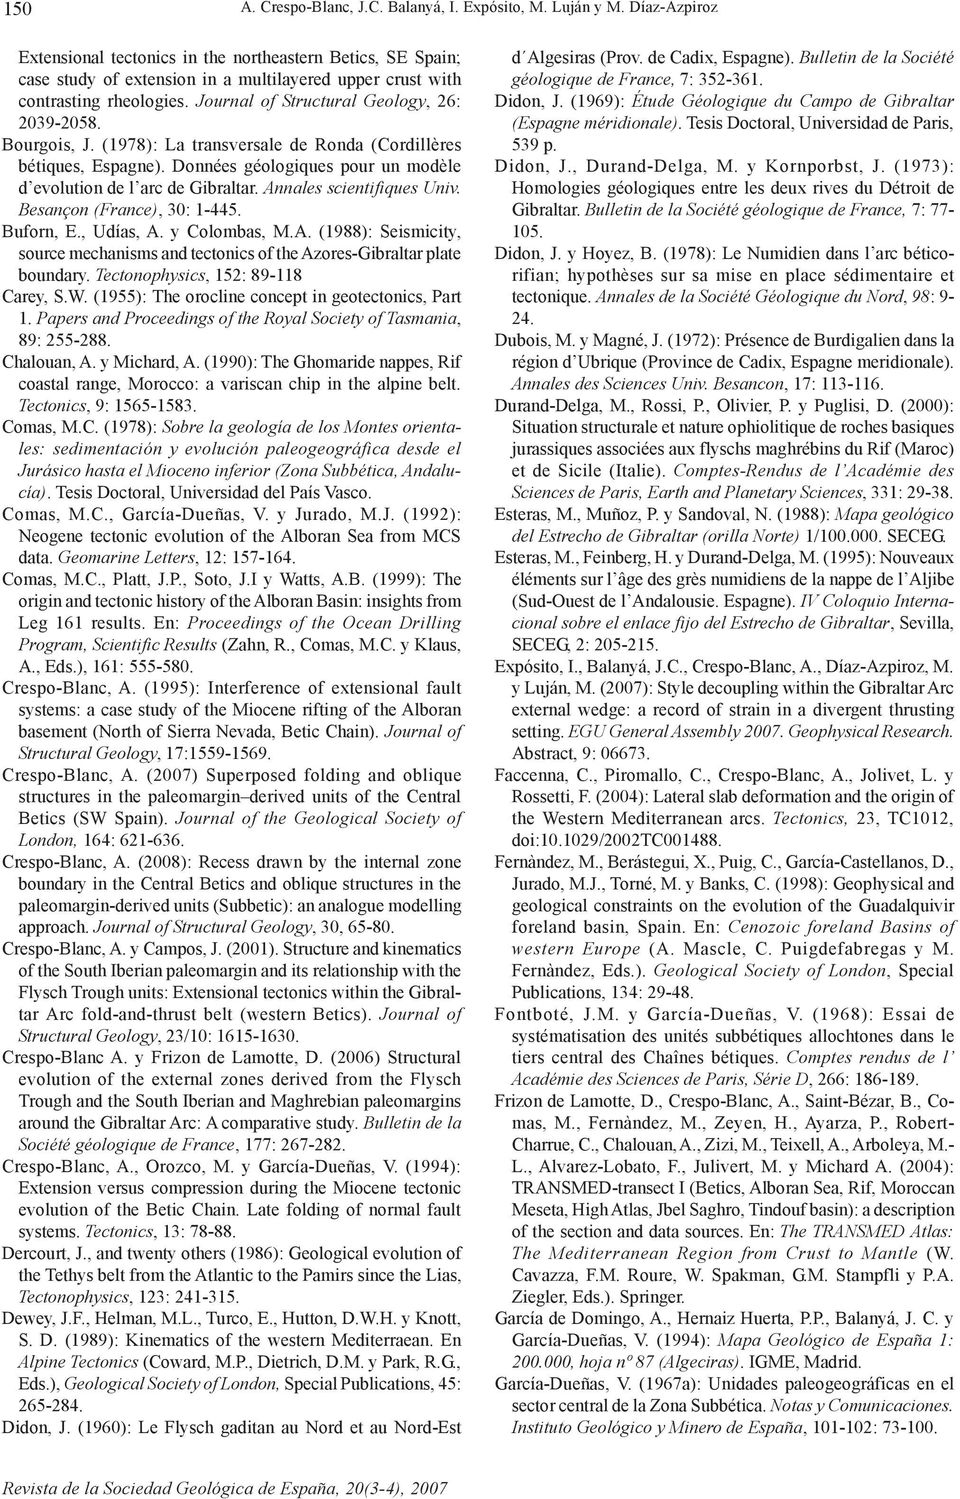 Journal of Structural Geology, 26: 2039-2058. Bourgois, J. (1978): La transversale de Ronda (Cordillères bétiques, Espagne). Données géologiques pour un modèle d evolution de l arc de Gibraltar.